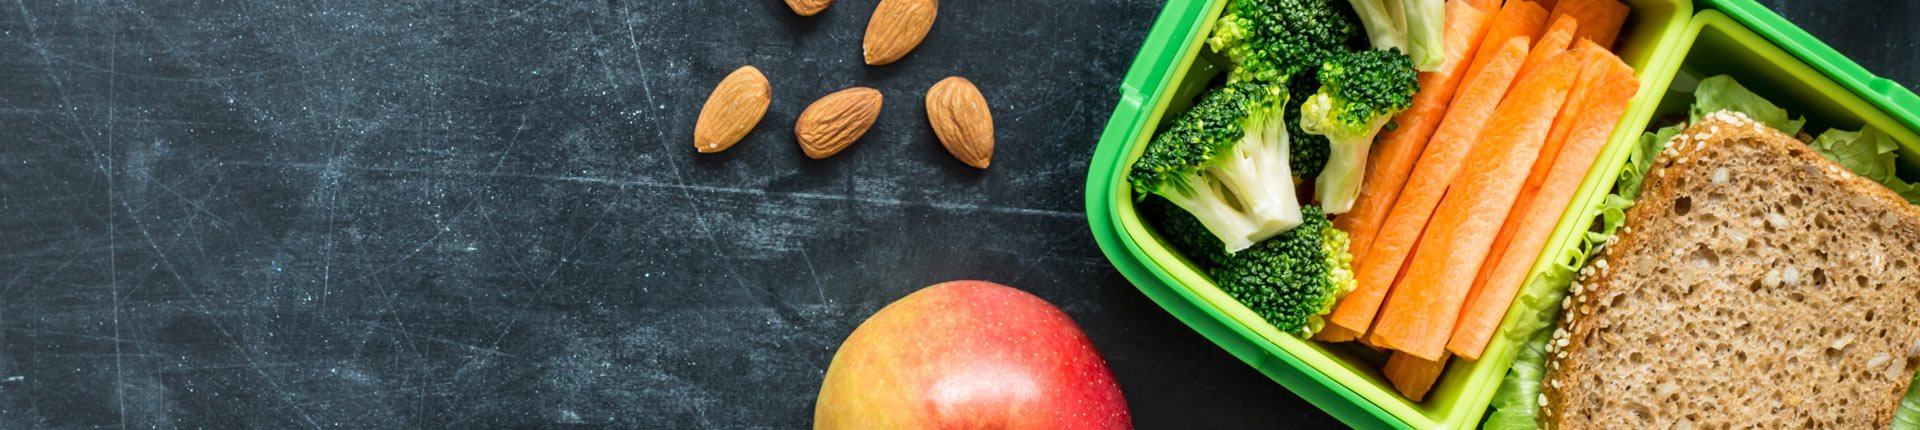 Dieta na redukcyjna dla ucznia - co jeść w szkole, żeby schudnąć?